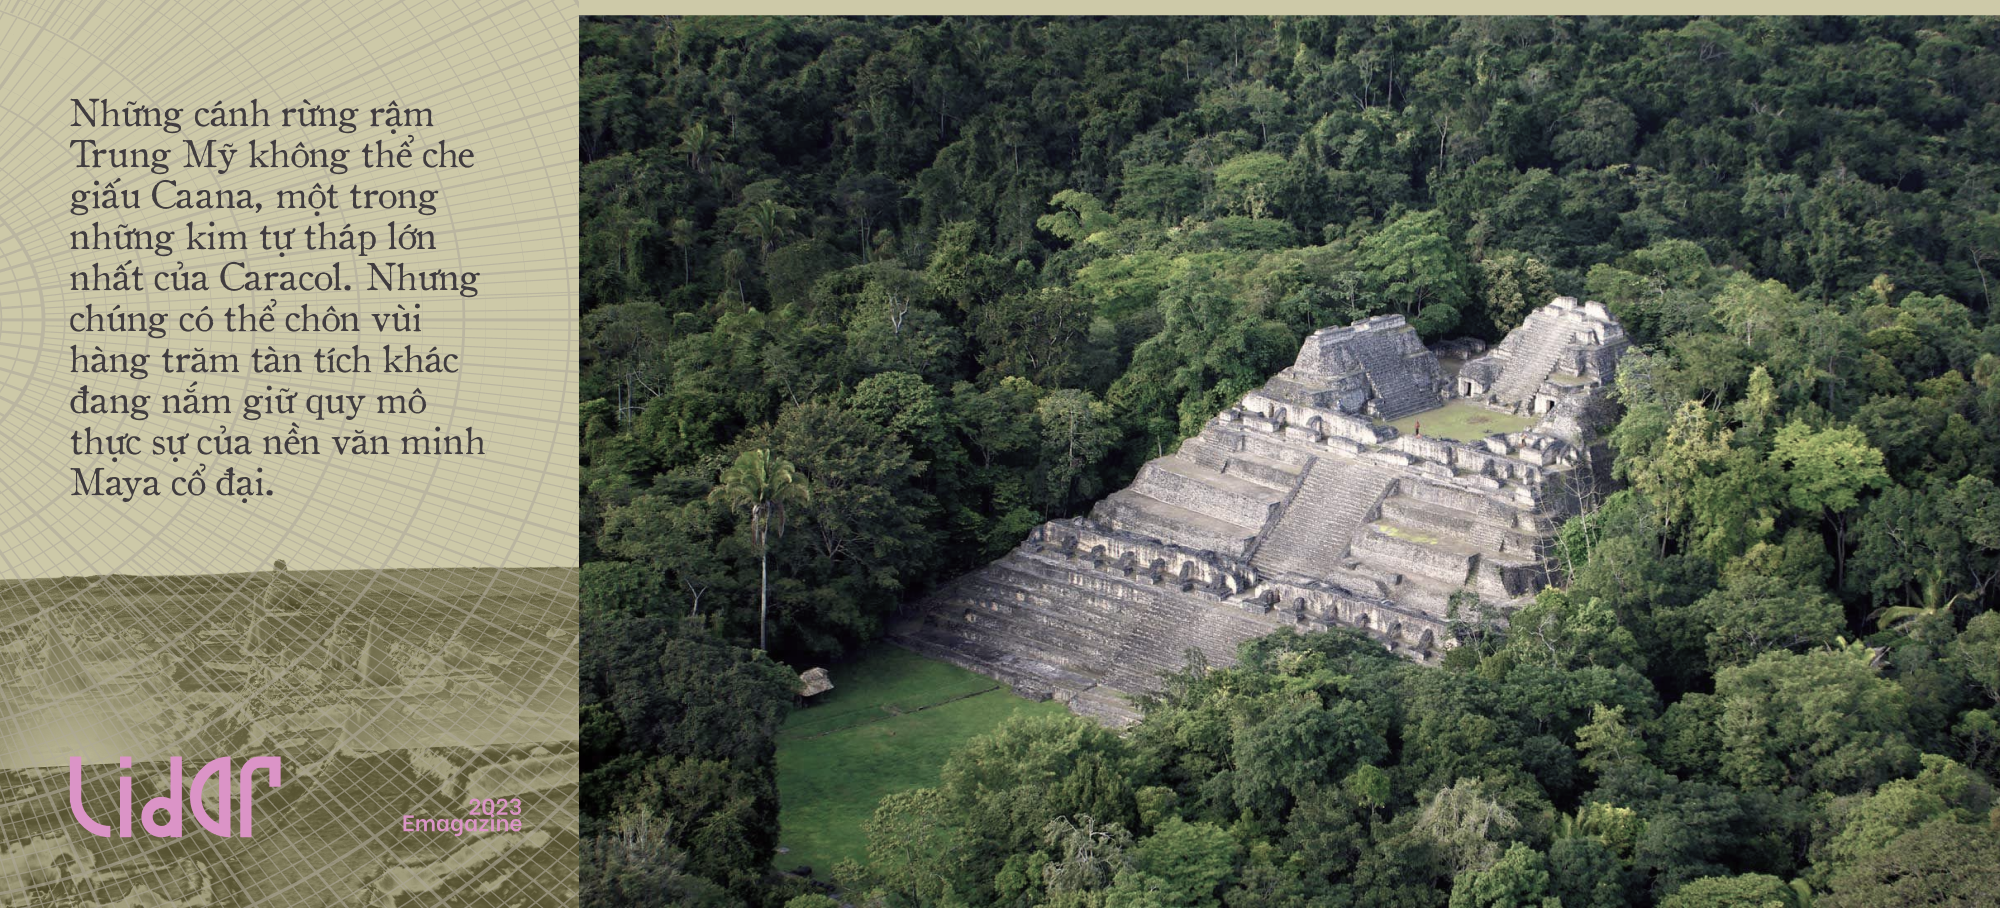 Ánh sáng từ bầu trời chiếu rọi những tàn tích Maya cổ đại: Kim tự tháp, siêu đô thị và những con đường dát vàng dưới trăng - Ảnh 6.